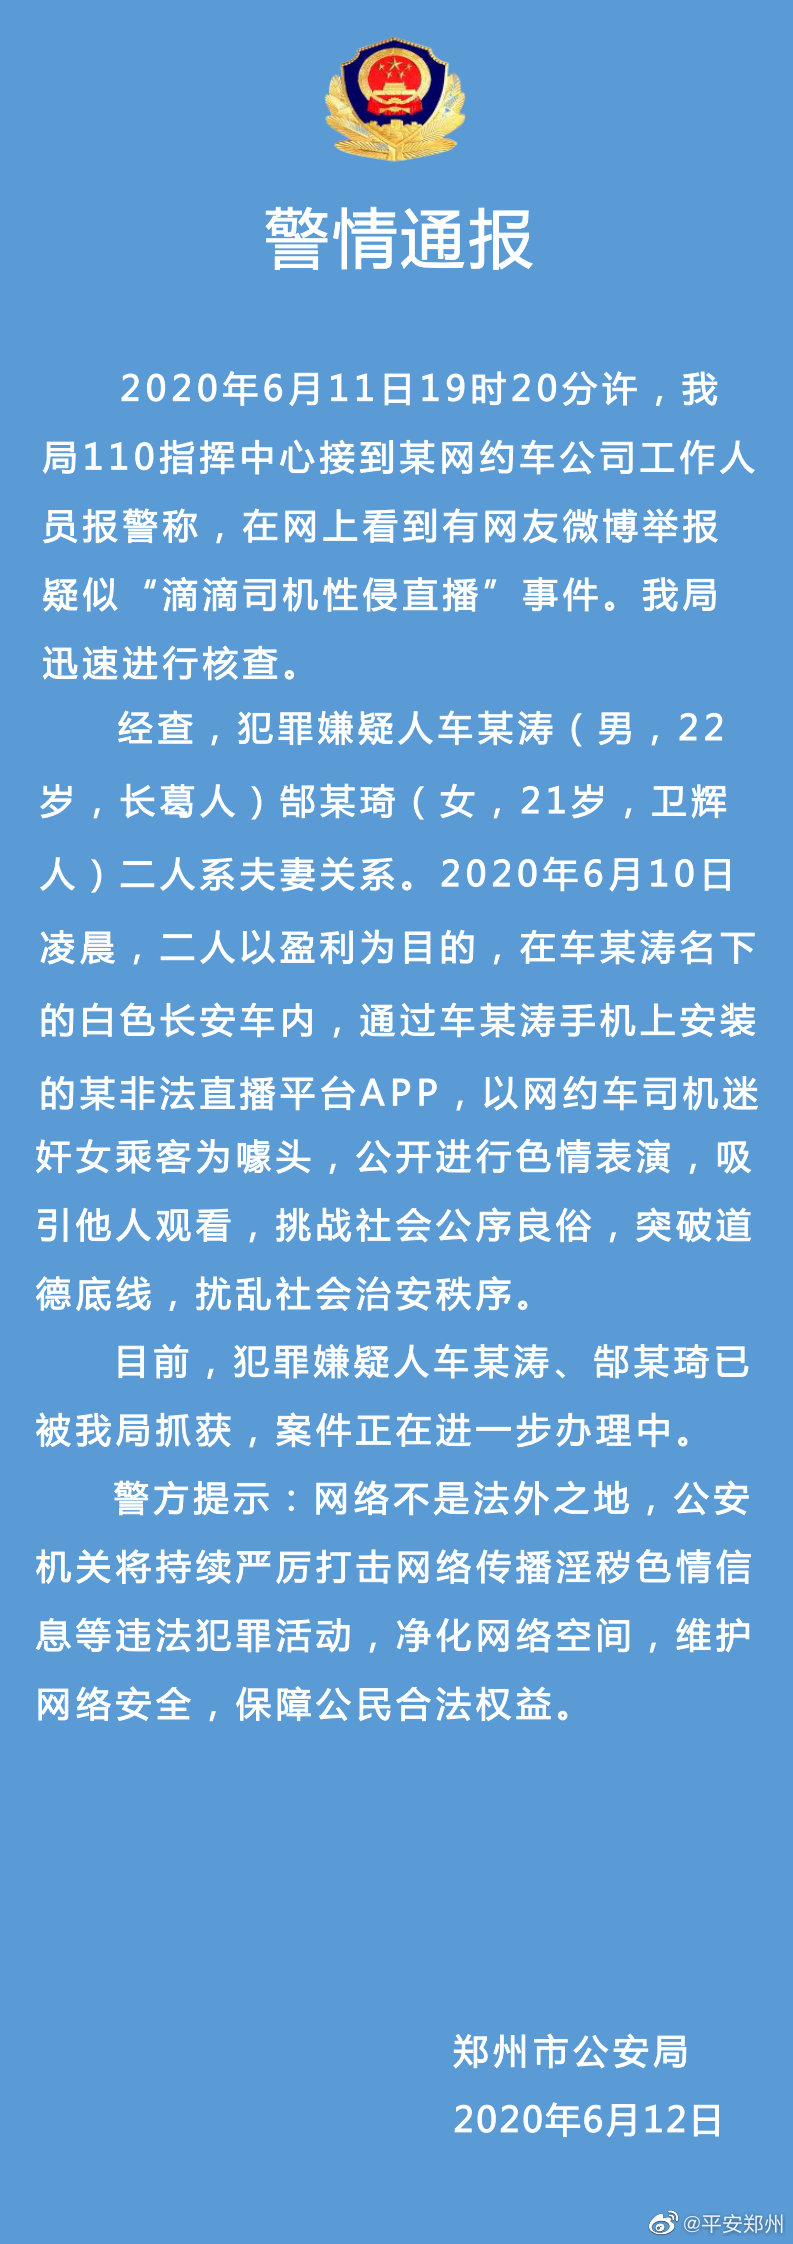 鄭州市公安局12日晚間發布的《警情通報》